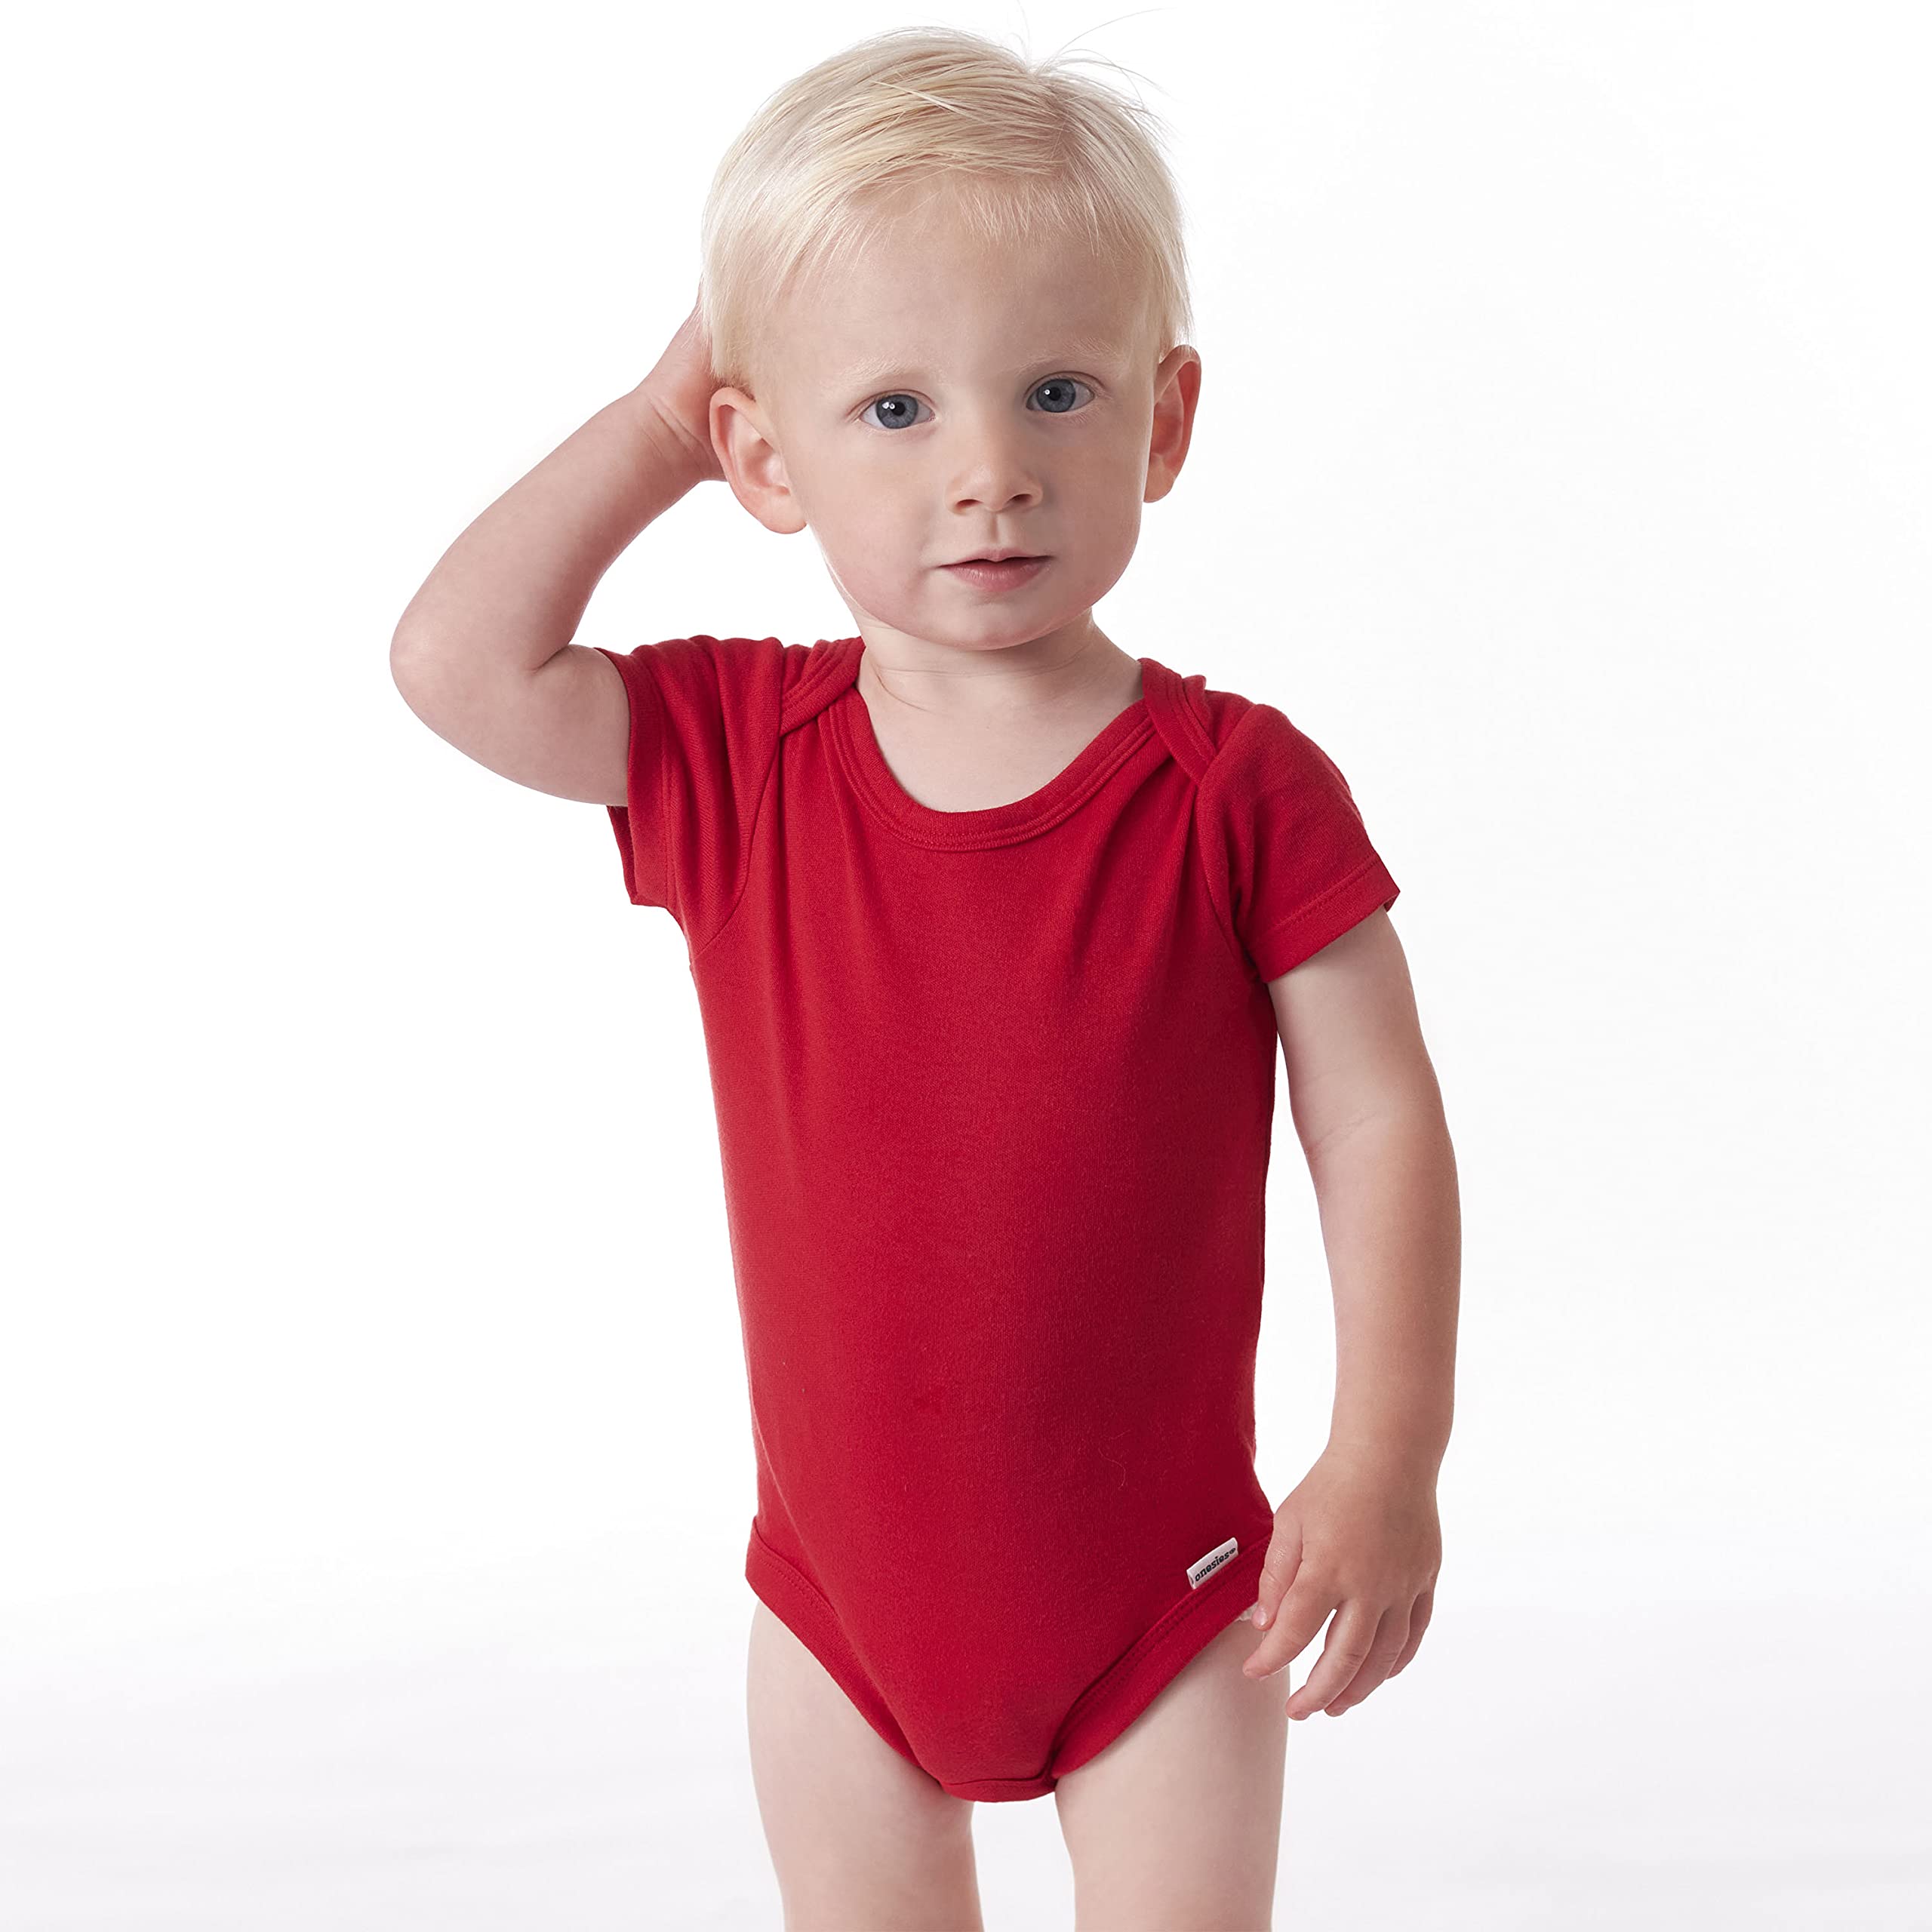 Gerber unisex-baby 5-pack Solid Onesies Bodysuits